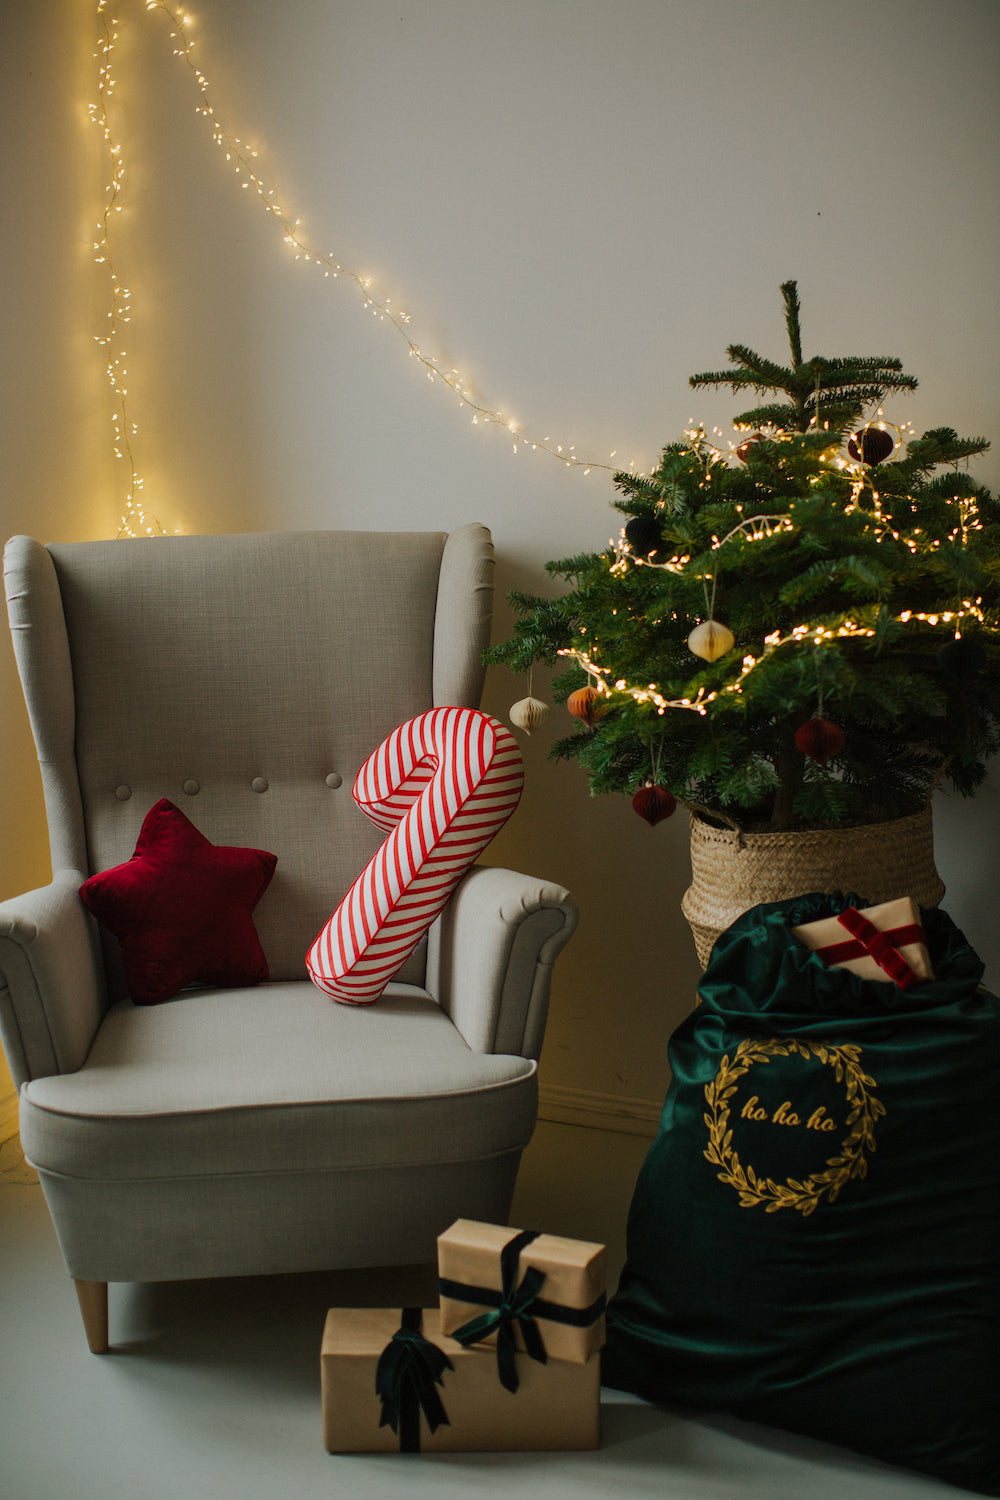 świąteczne poduszki laski w biało czerwone paski od Bettys Home leżąca na fotelu jako ozdoba świąteczna obok choinki 